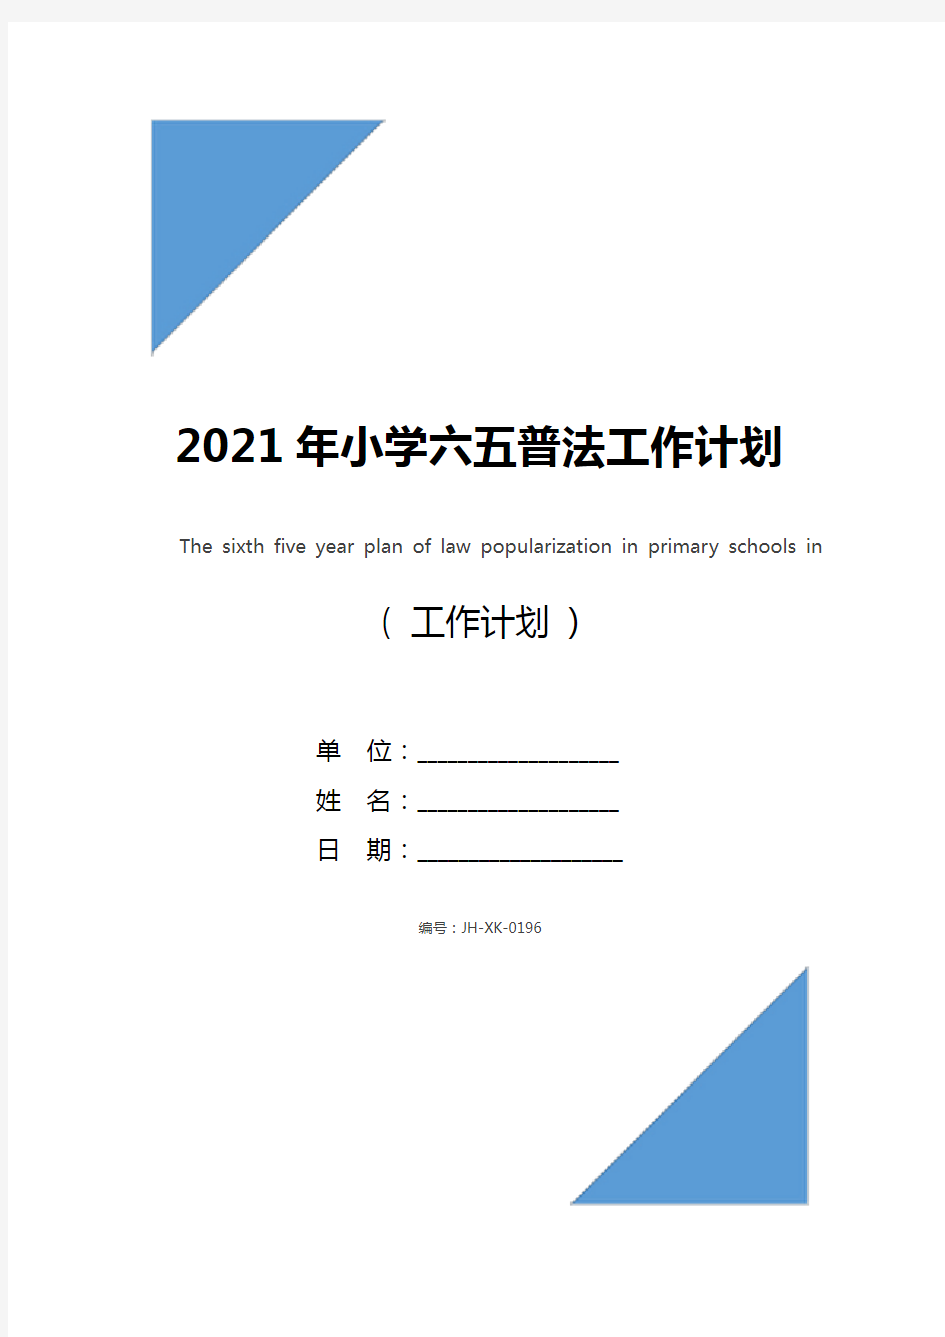 2021年小学六五普法工作计划(标准版)